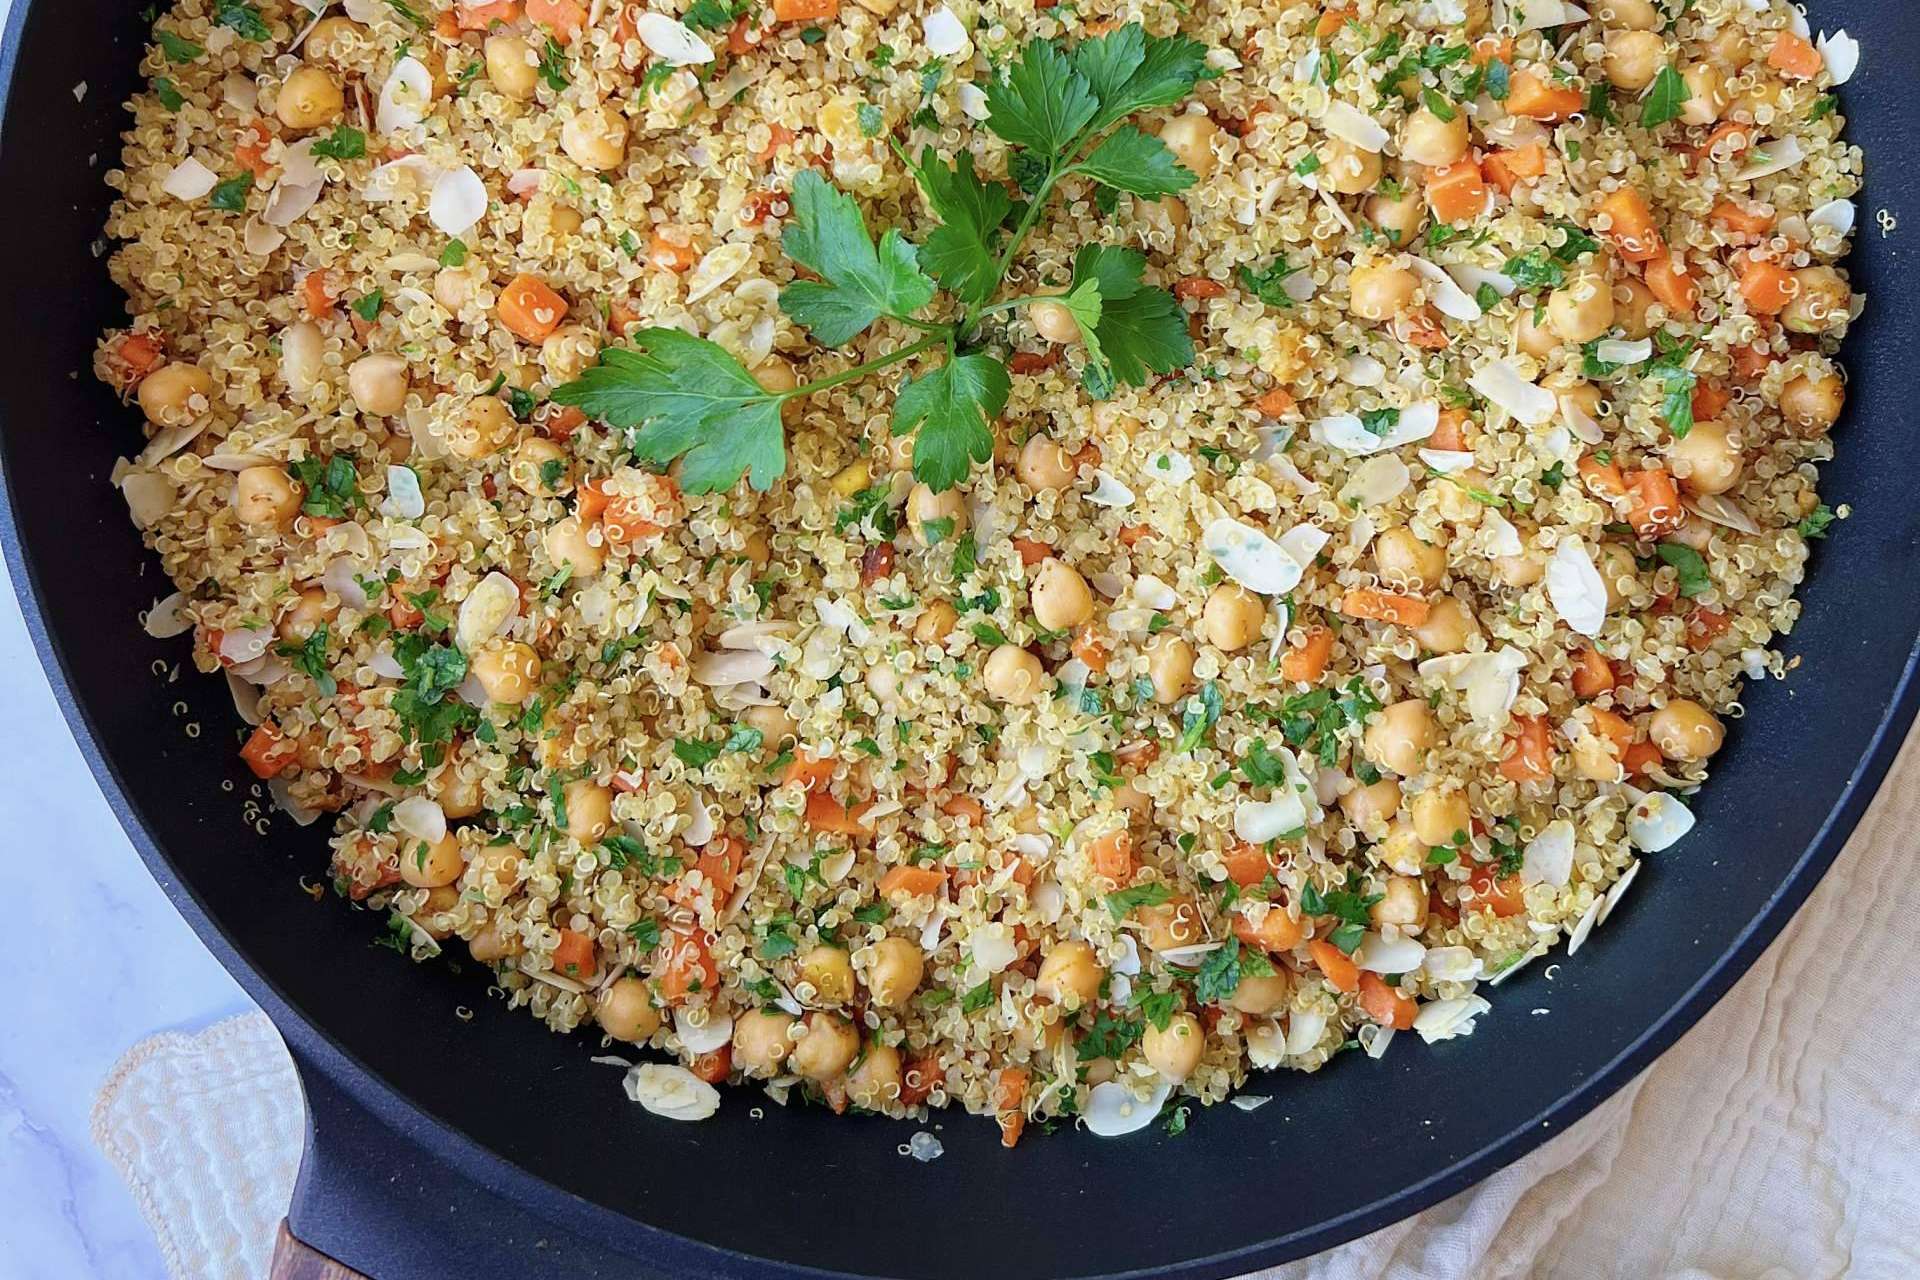 Preparar recetas para cenar con pocos ingredientes y sencillas de elaborar  con el Instagram de Cocinándome la Vida